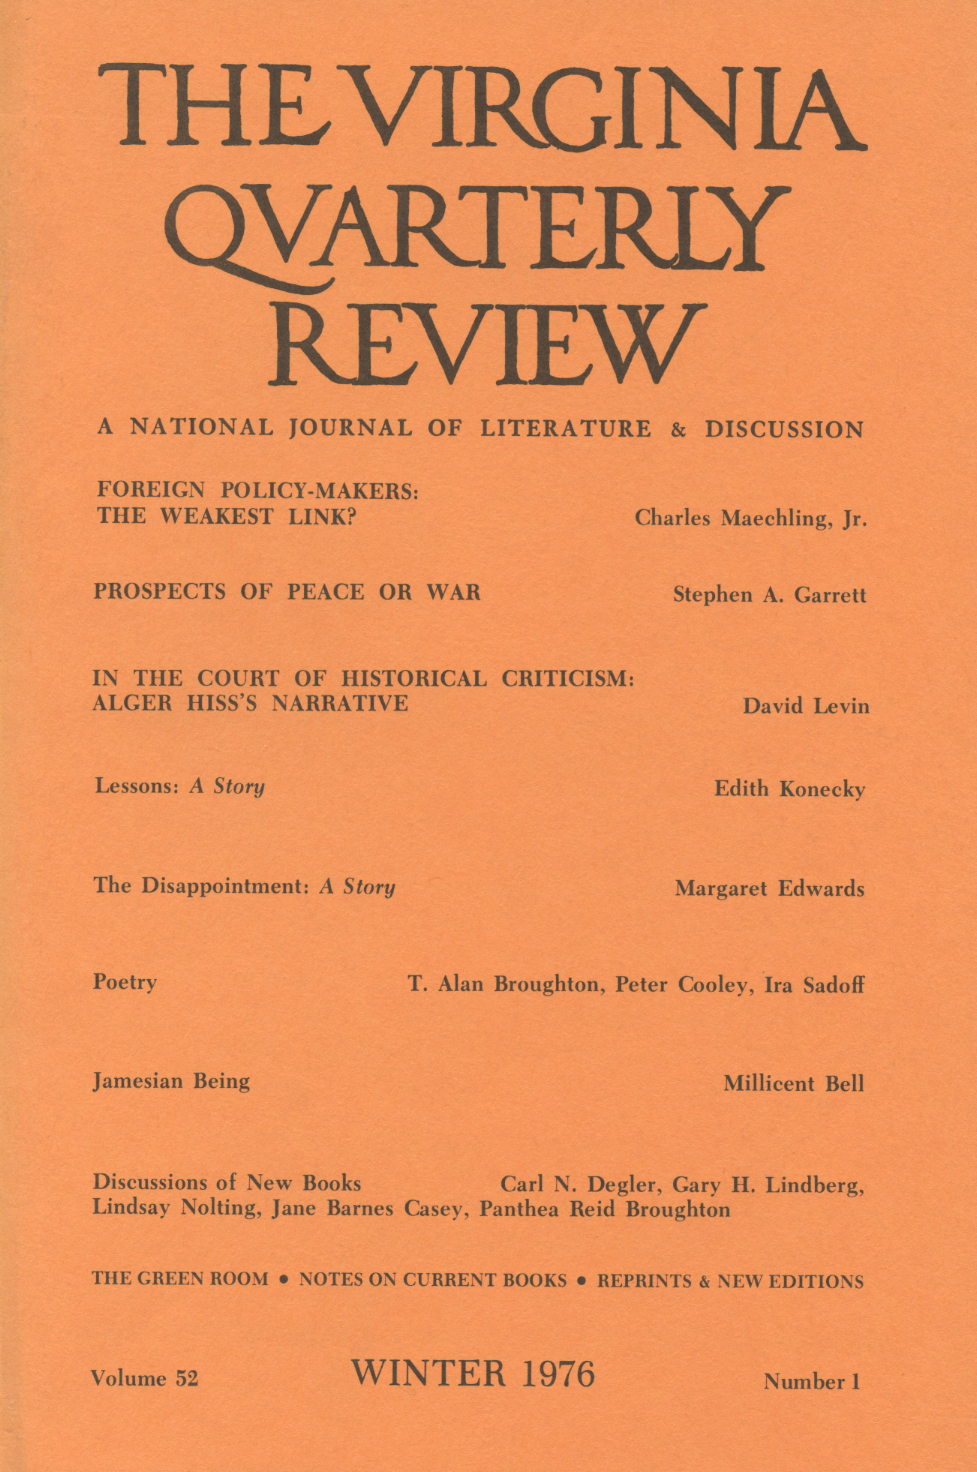 Virginia Quarterly Review, Winter 1976 cover